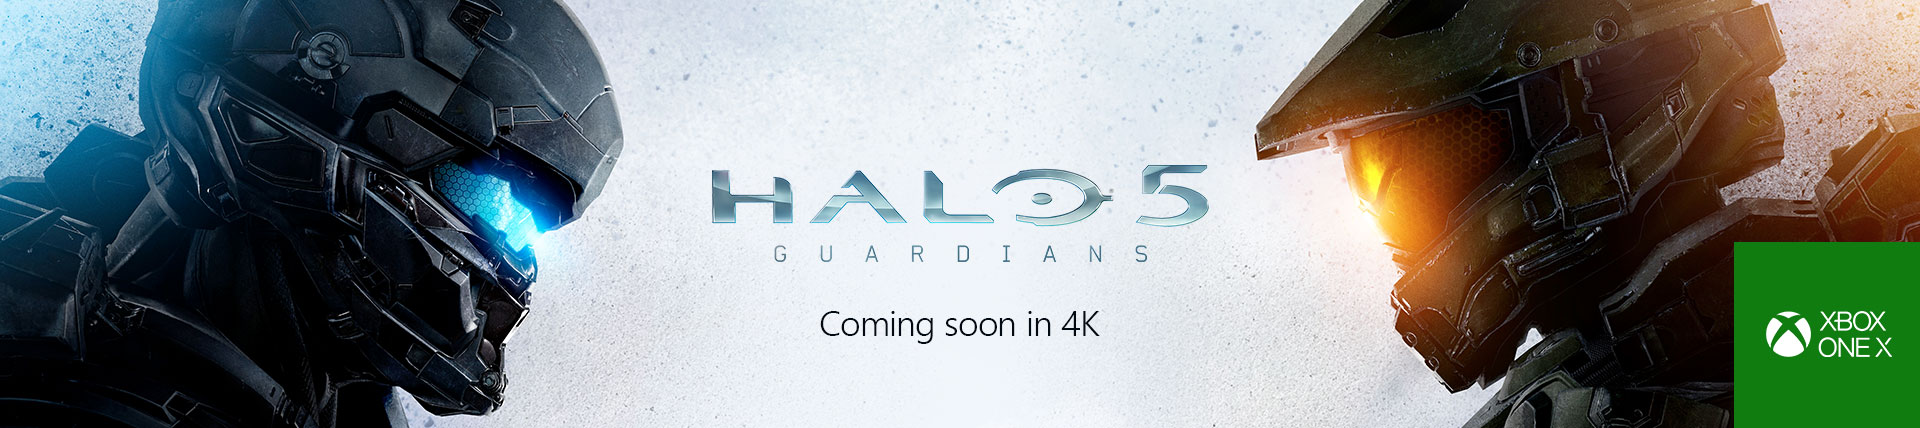 Immagine pubblicata in relazione al seguente contenuto: Halo 5: Guardians girer in 4K con la nuova console Microsoft Xbox One X | Nome immagine: news26643_Halo-5-Guardians-Xbox-One-X-4K_1.jpg